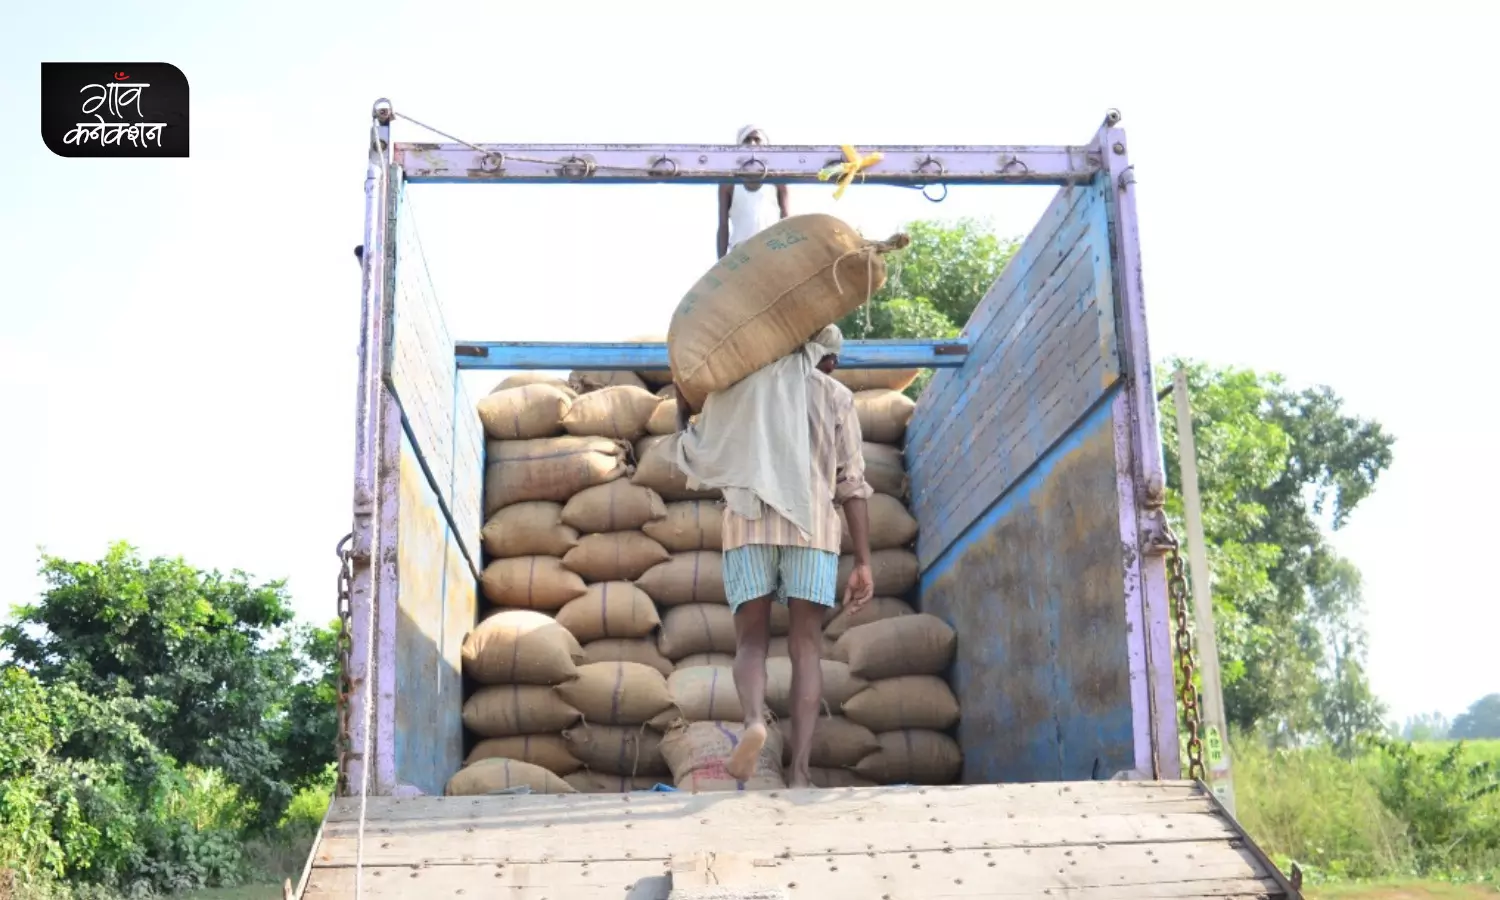 क्या भारत चावल के निर्यात पर प्रतिबंध लगाएगा? क्या कहते हैं चावल के व्यापारी और निर्यातक